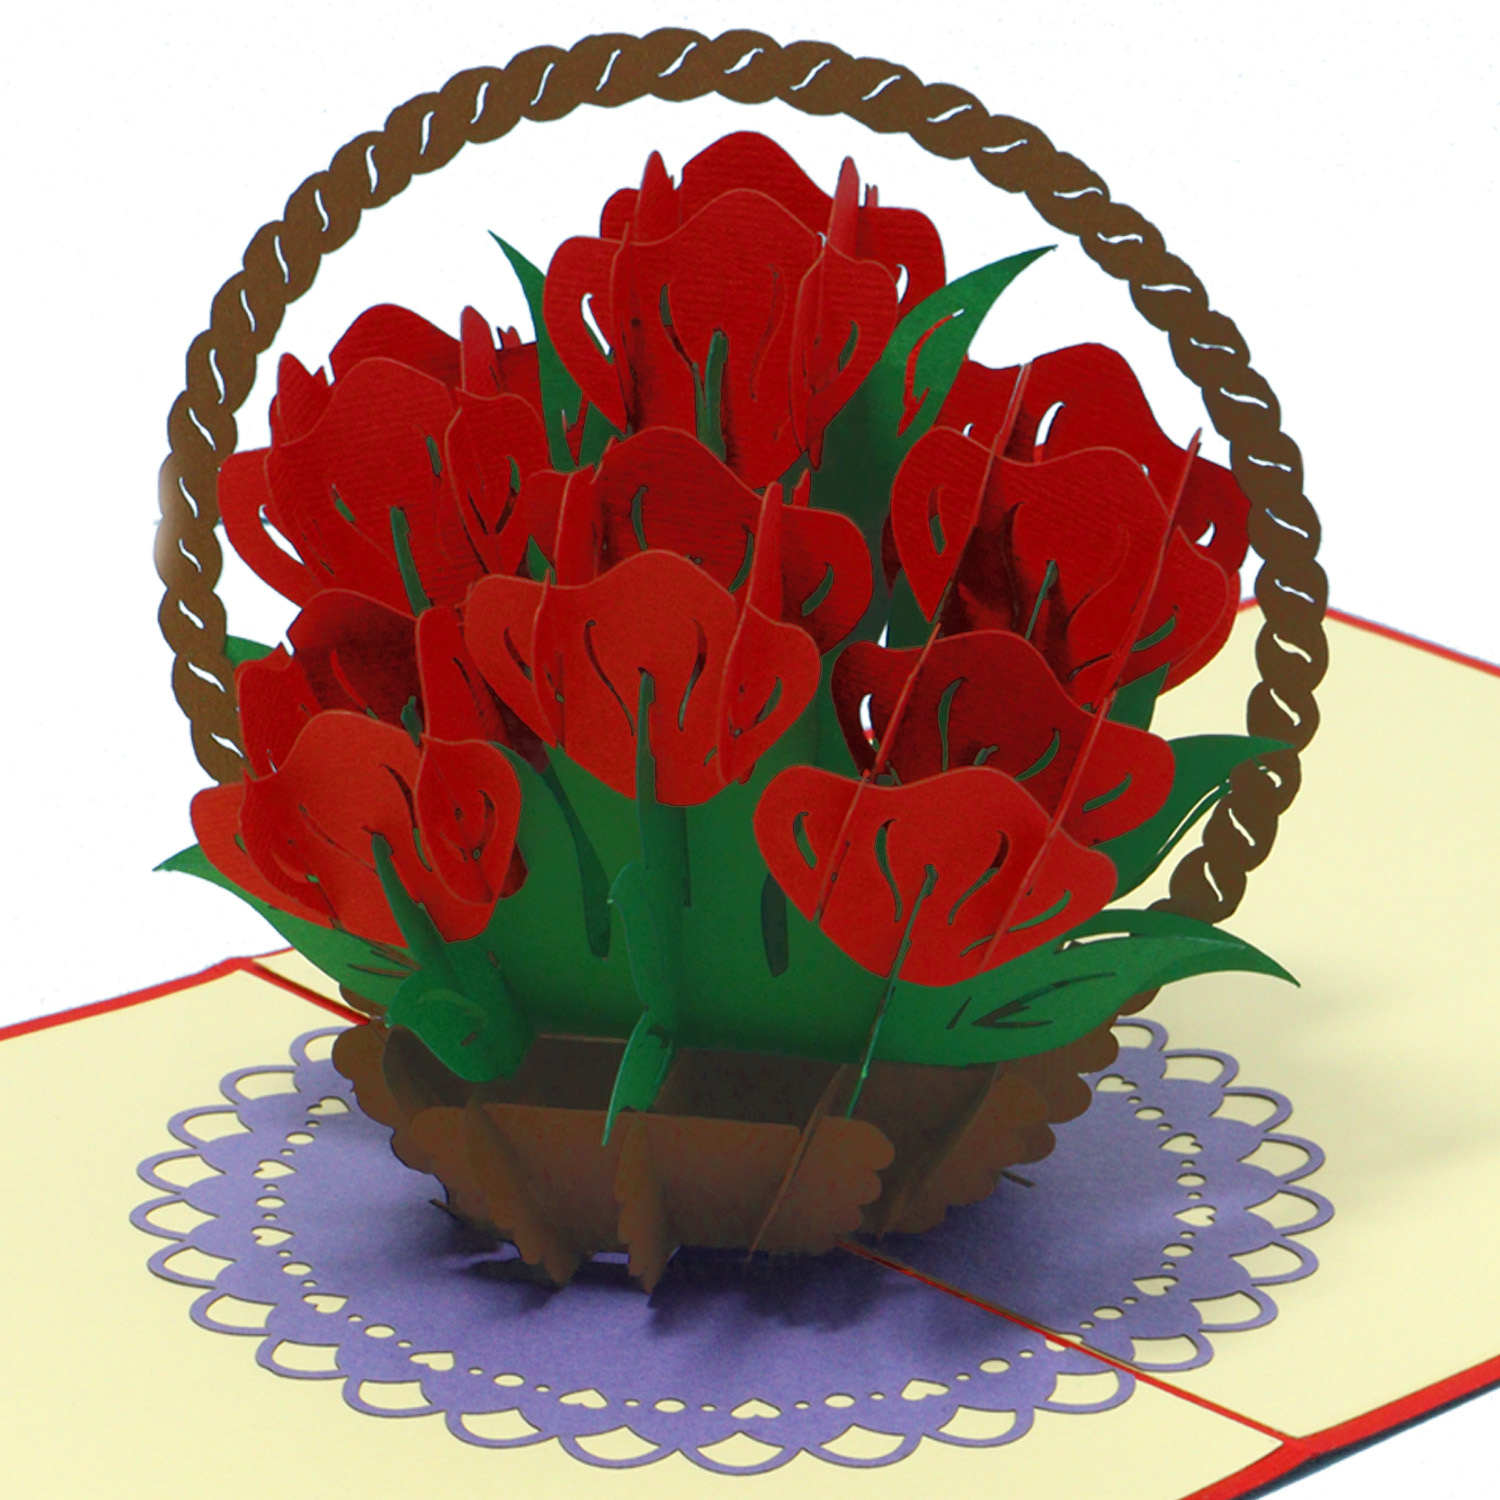 LINPOPUP Pop Up Karte, Rosen, 3D Blumenkorb, Geburtstags-Karte - Hochzreit - Muttertag - Jahrestag - Geschenk - Gruß-Karte mit Blumen, LIN17752, LINPopUp®, N720